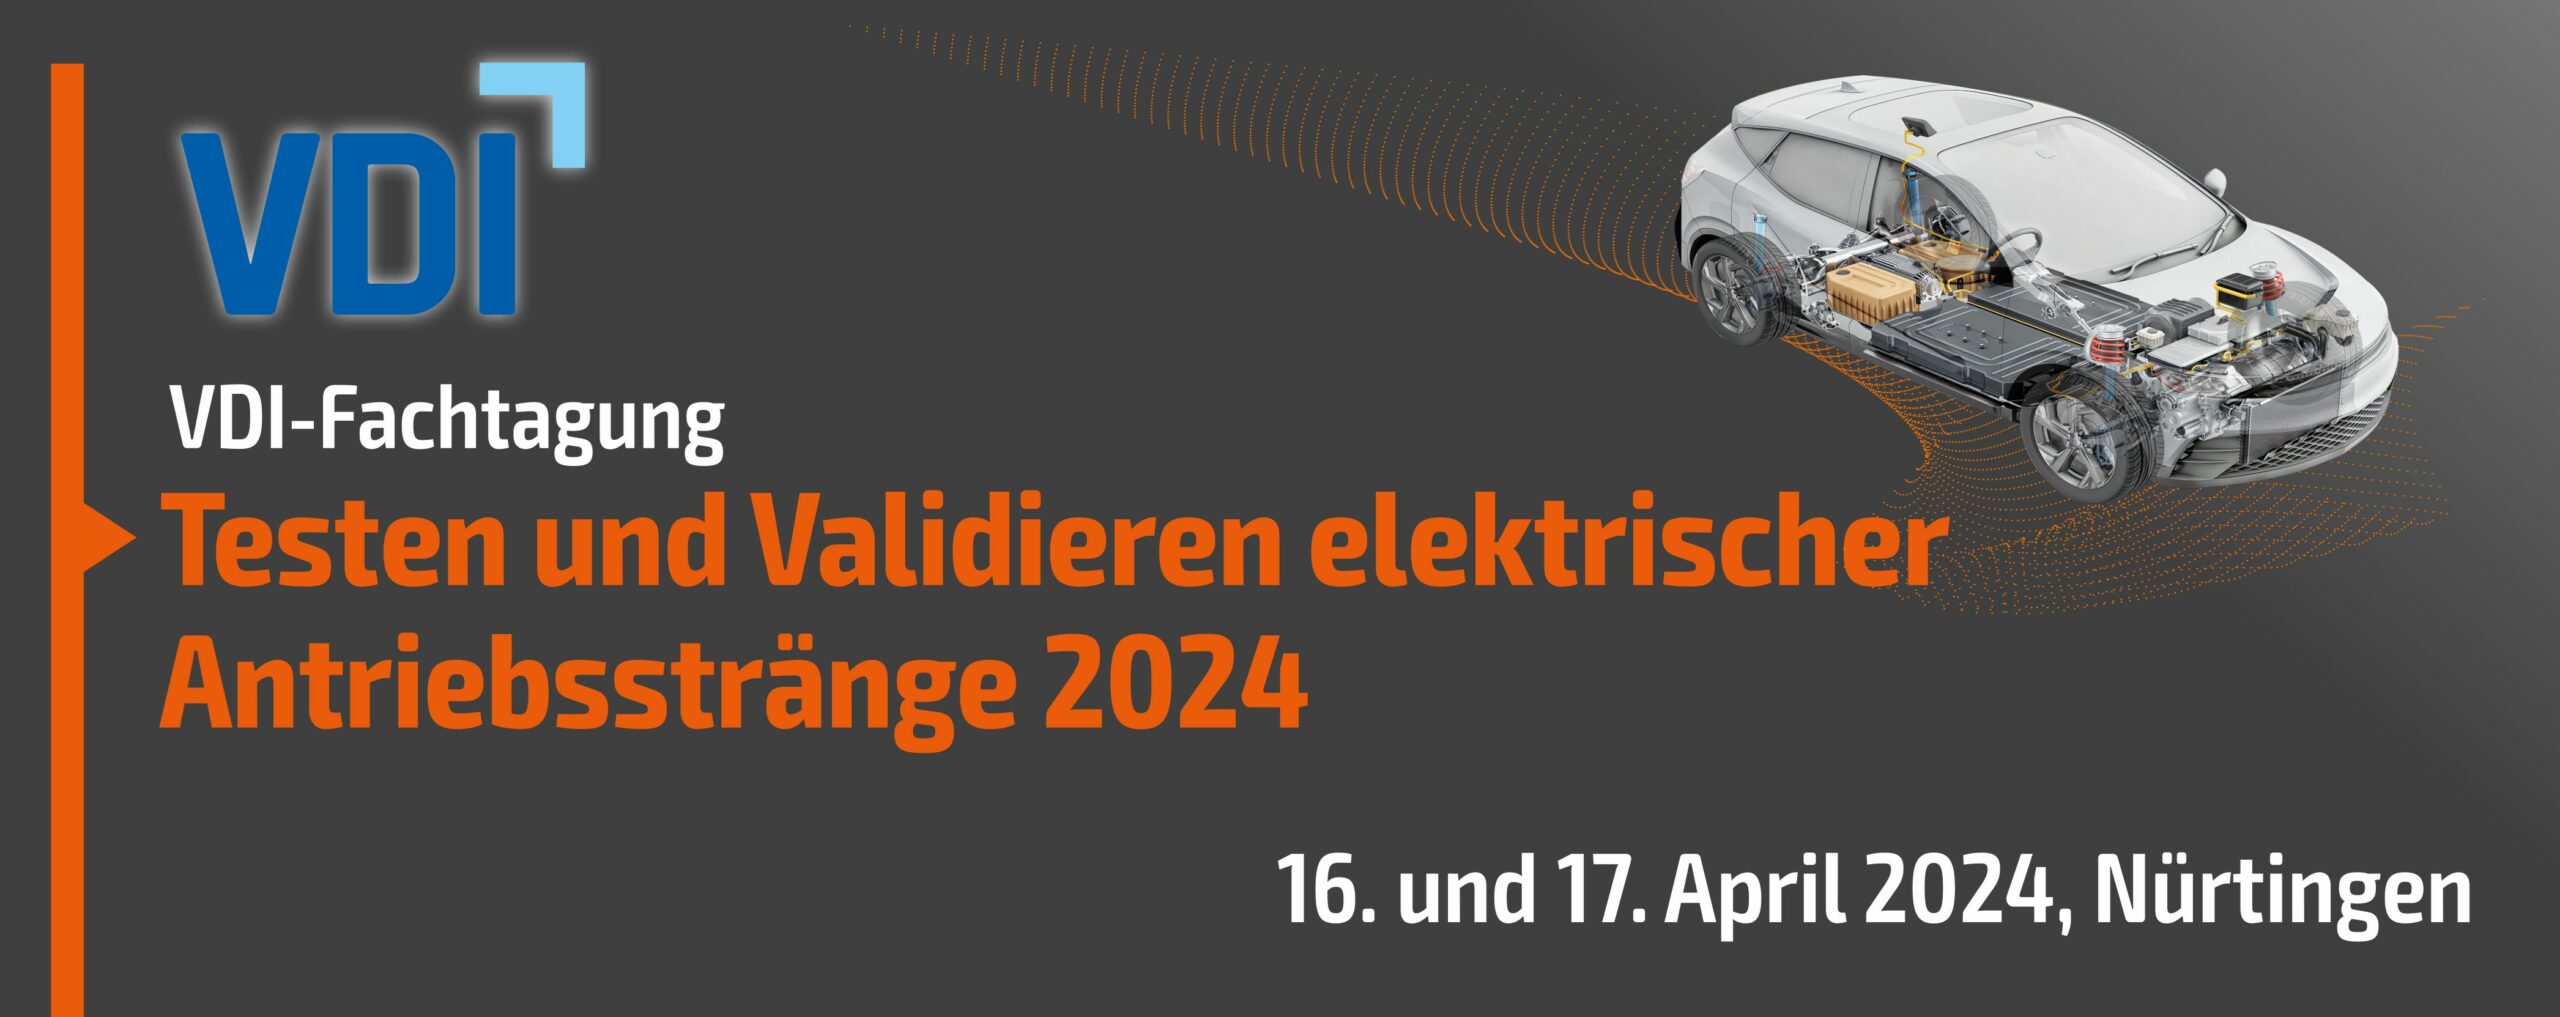 tetranes vom 16. bis 17. April 2024 in Nürtingen auf der VDI-Fachtagung: Testen und Validieren elektrischer Antriebsstränge 2024.